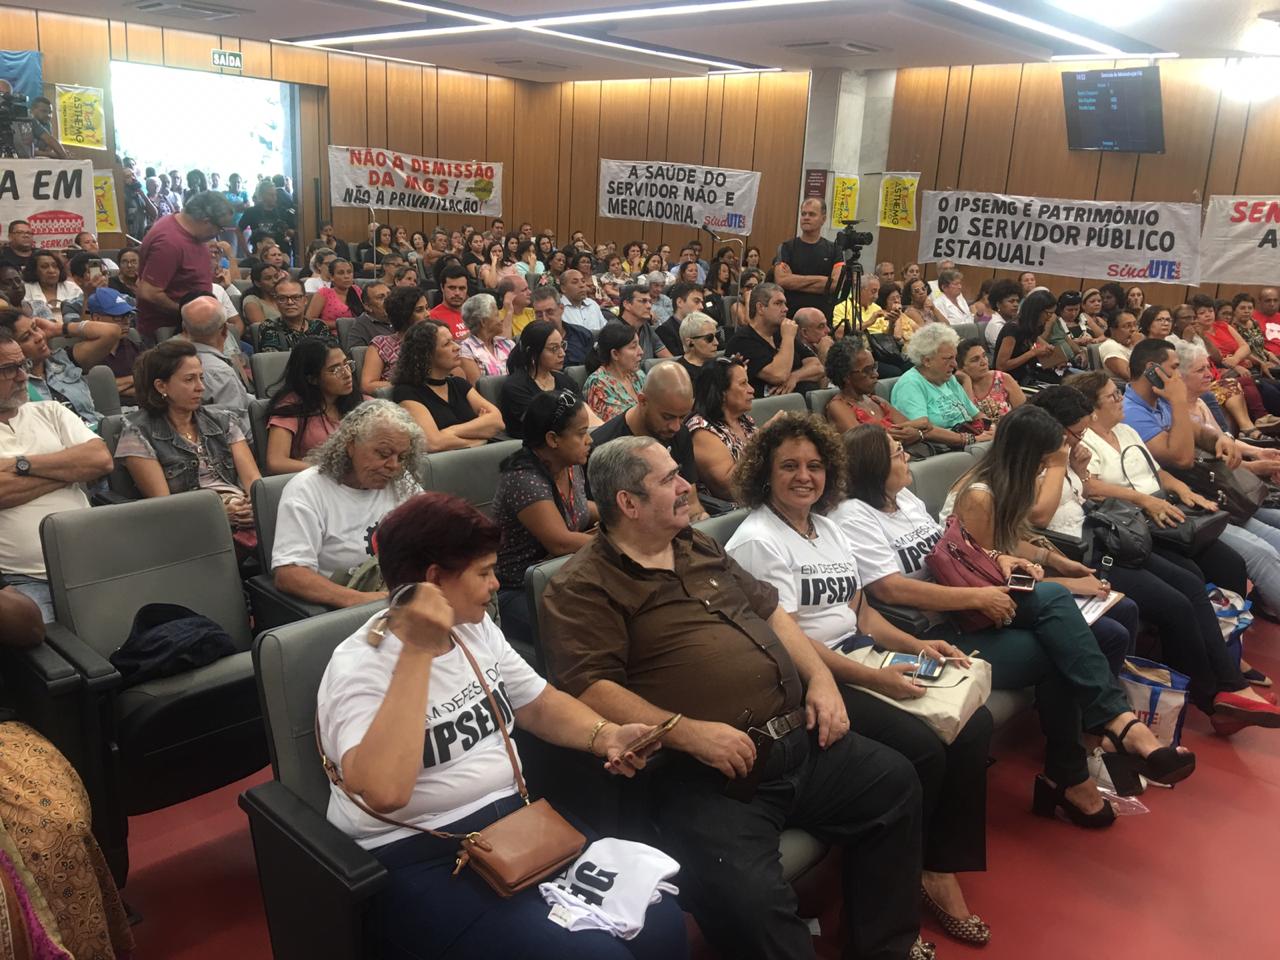 You are currently viewing Audiência Pública discute situação do Ipsemg; Betão afirma “temos que lutar pela autonomia do Instituto”